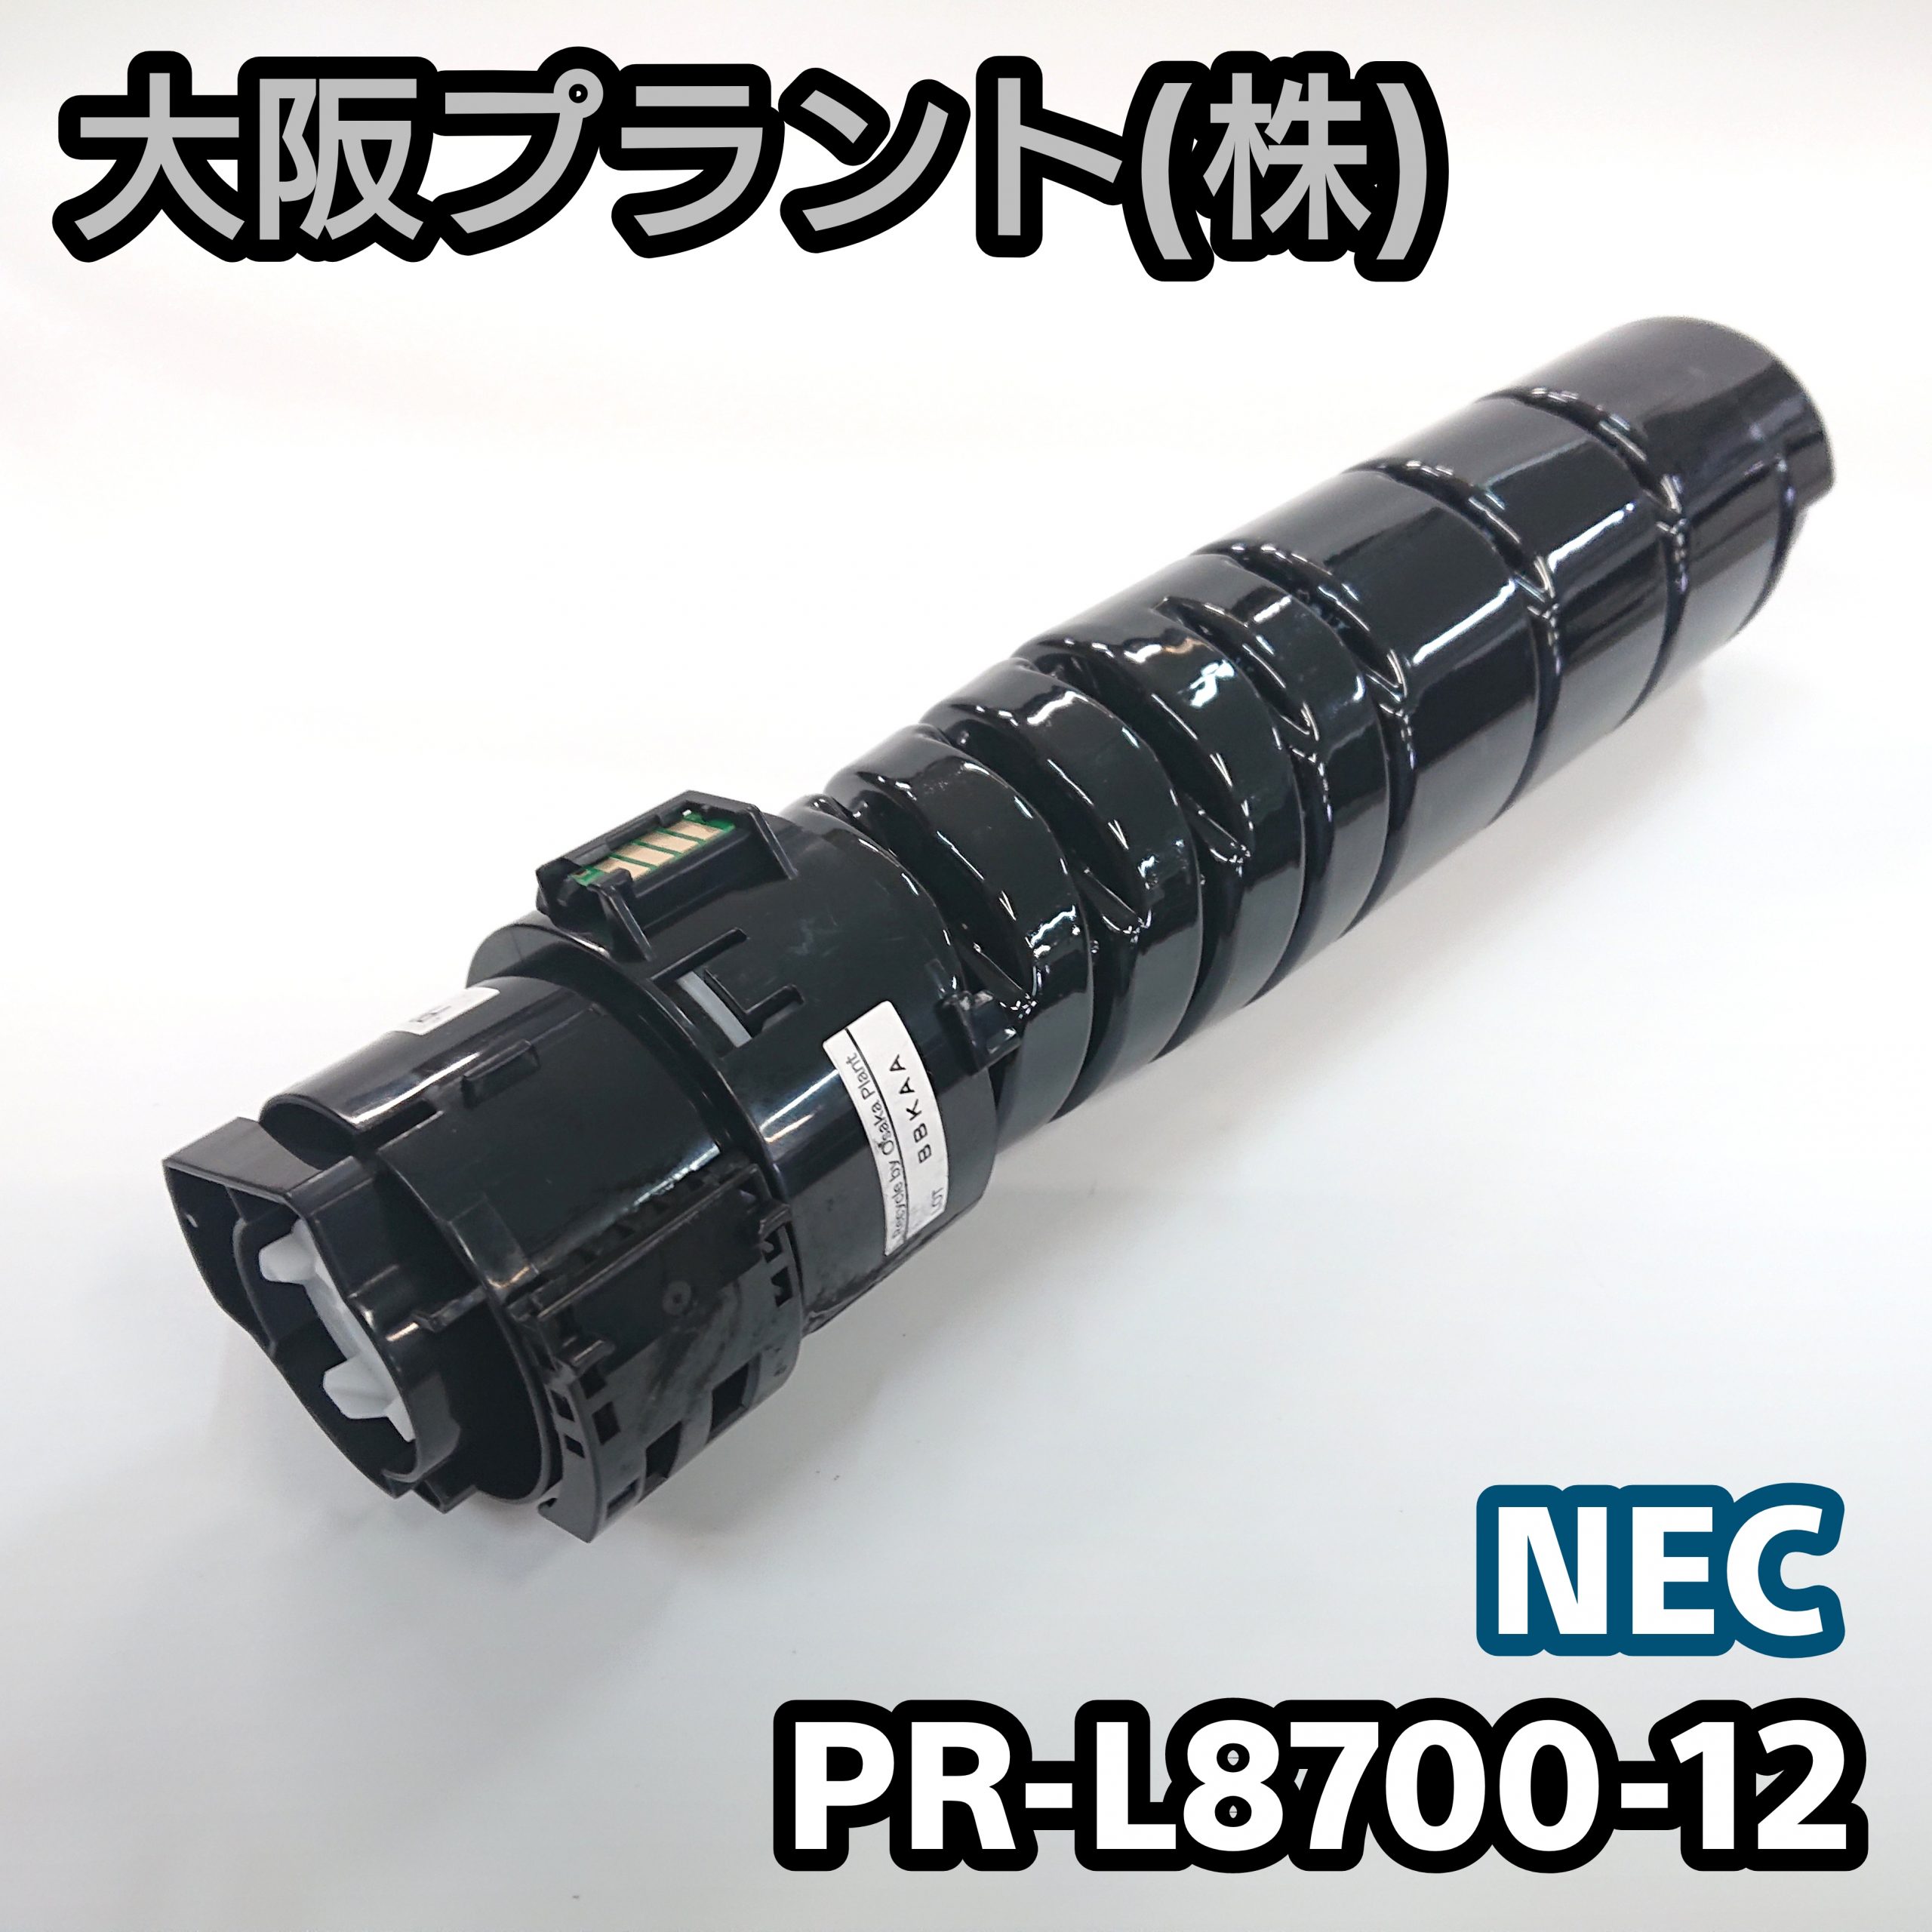 NEC PR-L8700-12